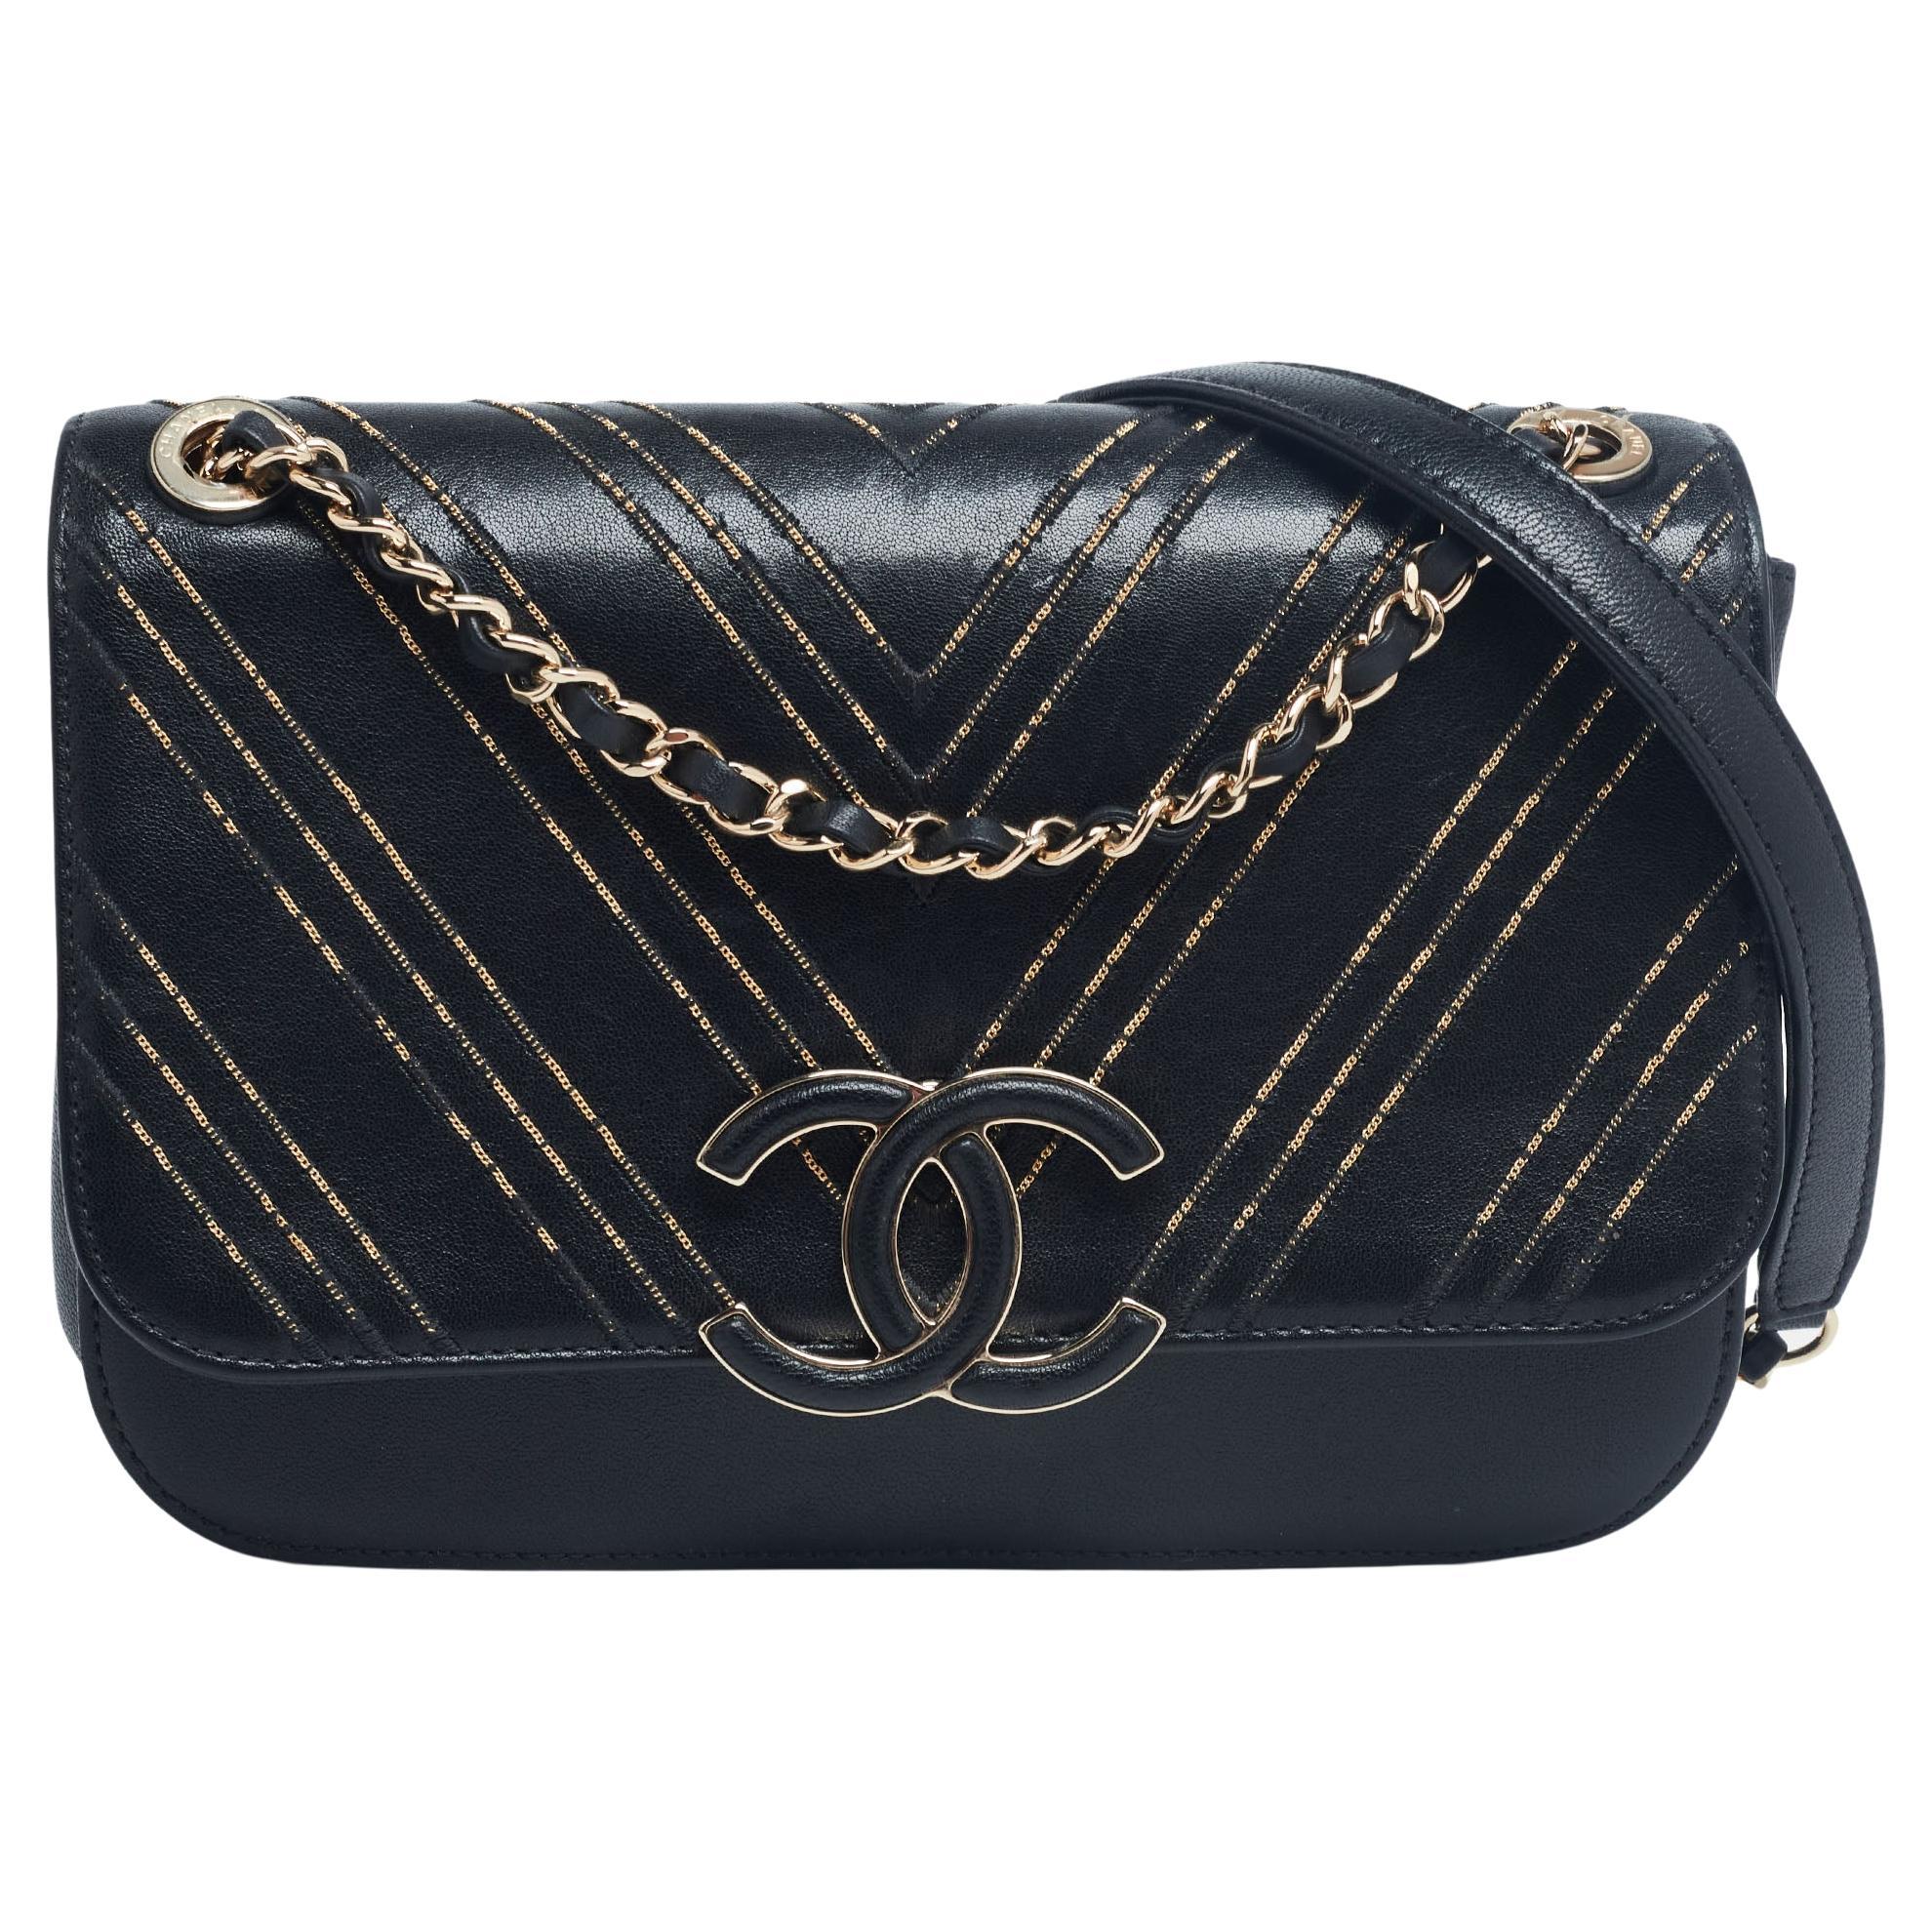 Chanel Black/Gold Chevron Leather CC Subtle Flap Bag